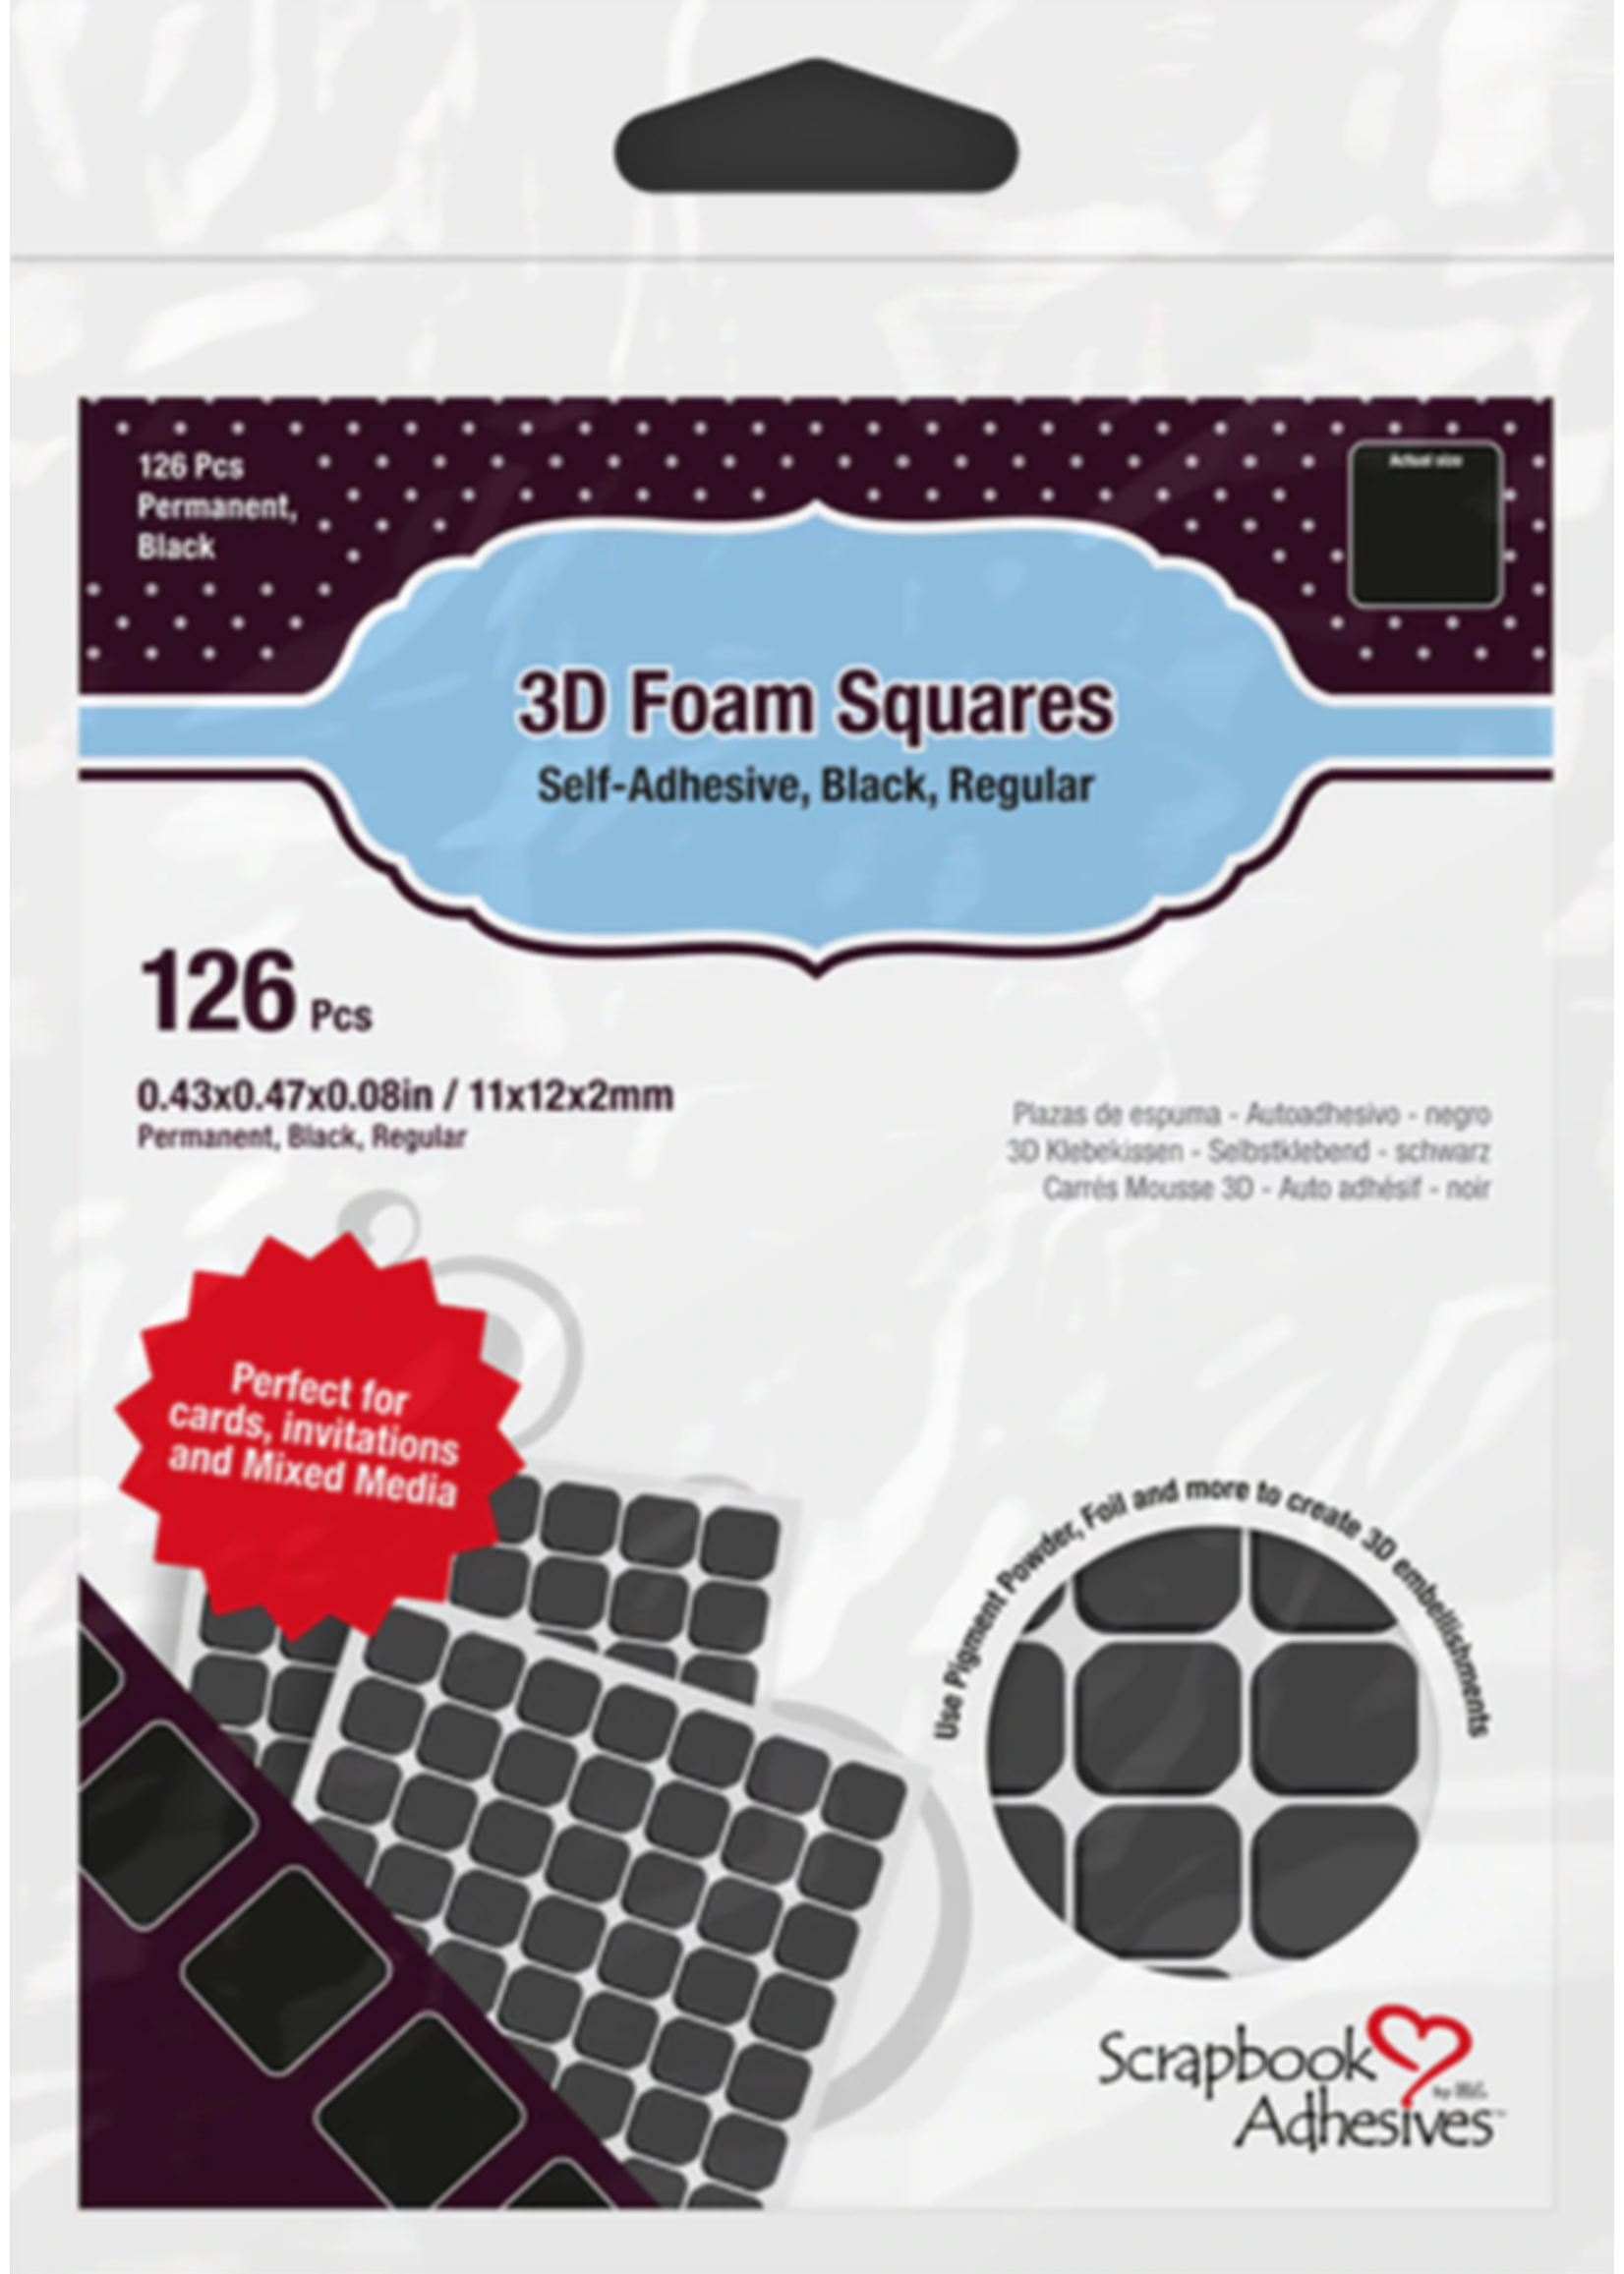 PETERSON-A 3L 3D Black Foam Squares .08 thickness